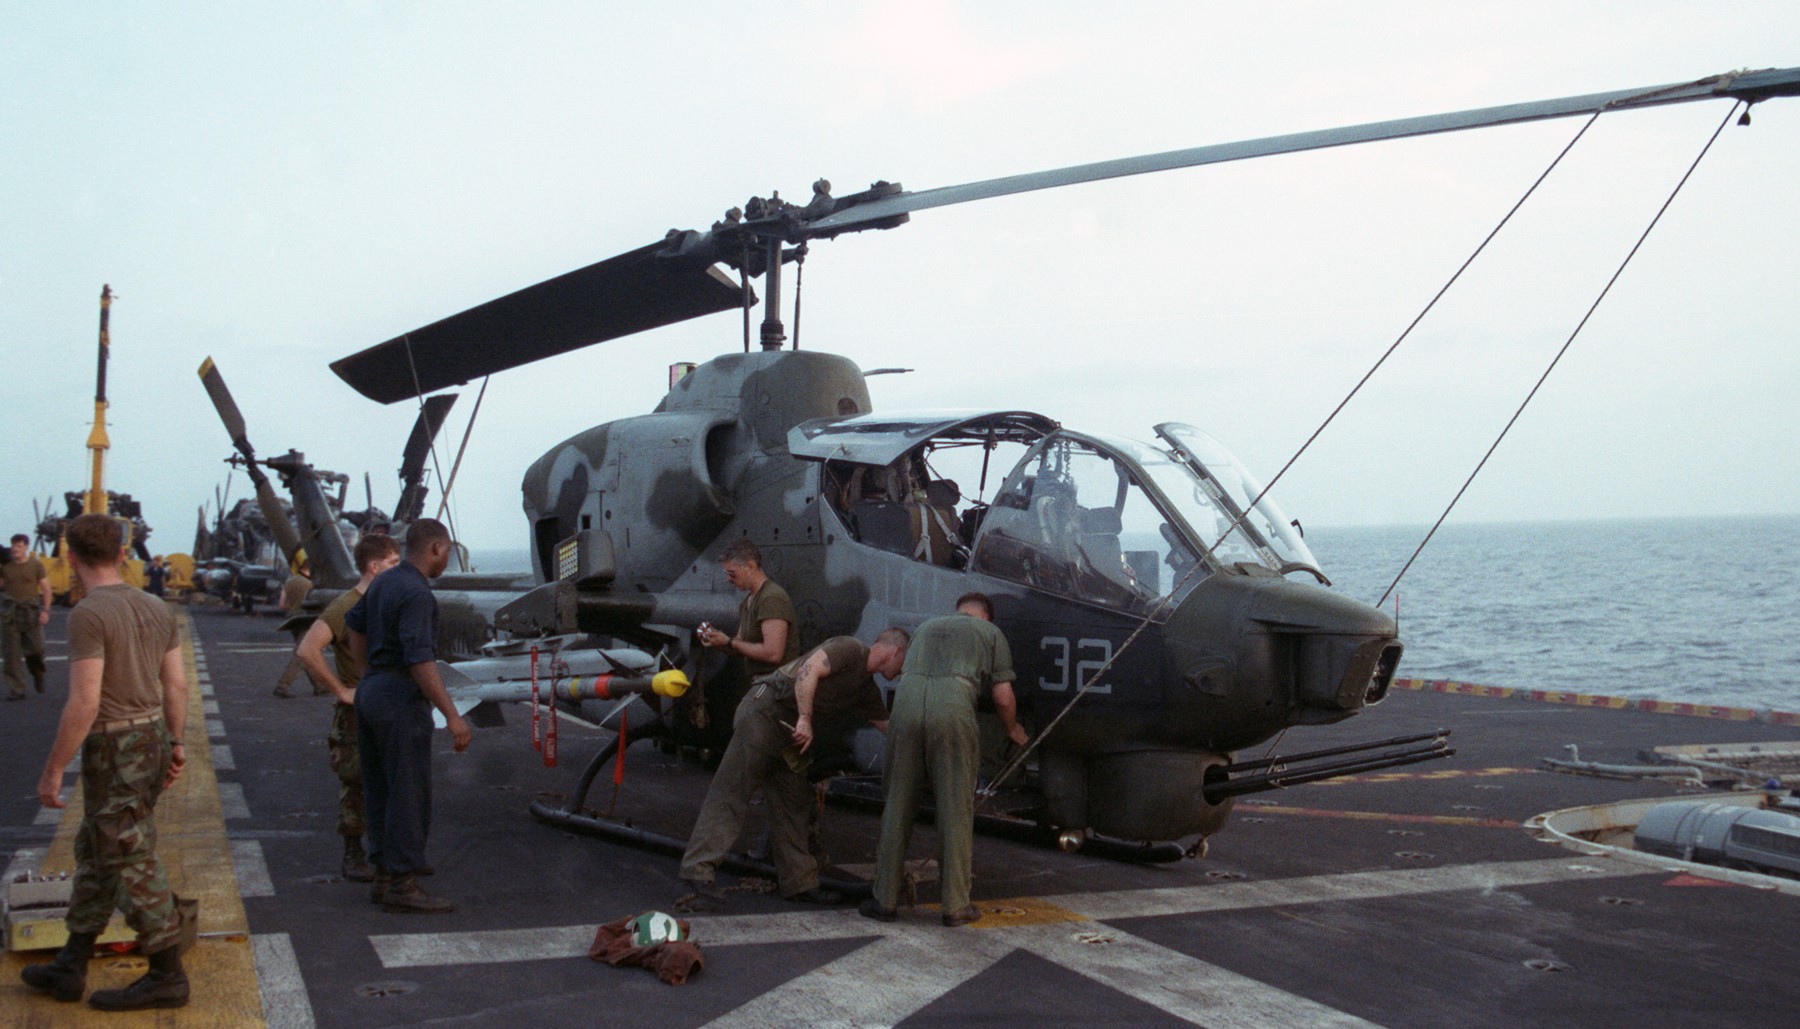 lph-7 uss guadalcanal iwo jima class amphibious assault ship landing platform helicopter us navy 37